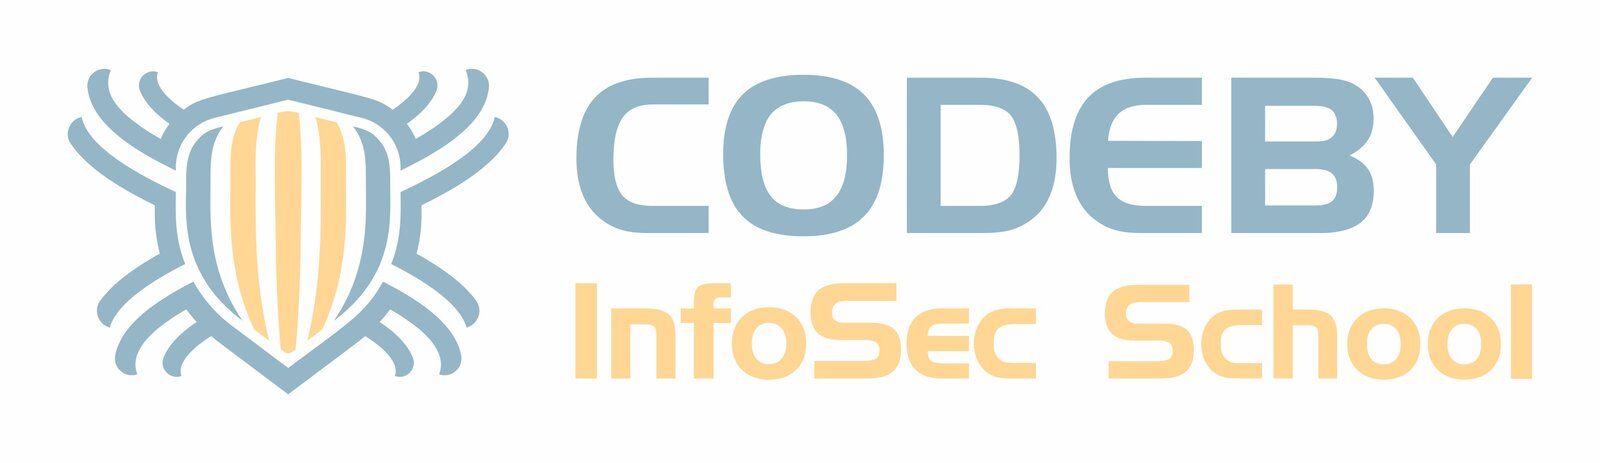 Codeby InfiSec School.jpg